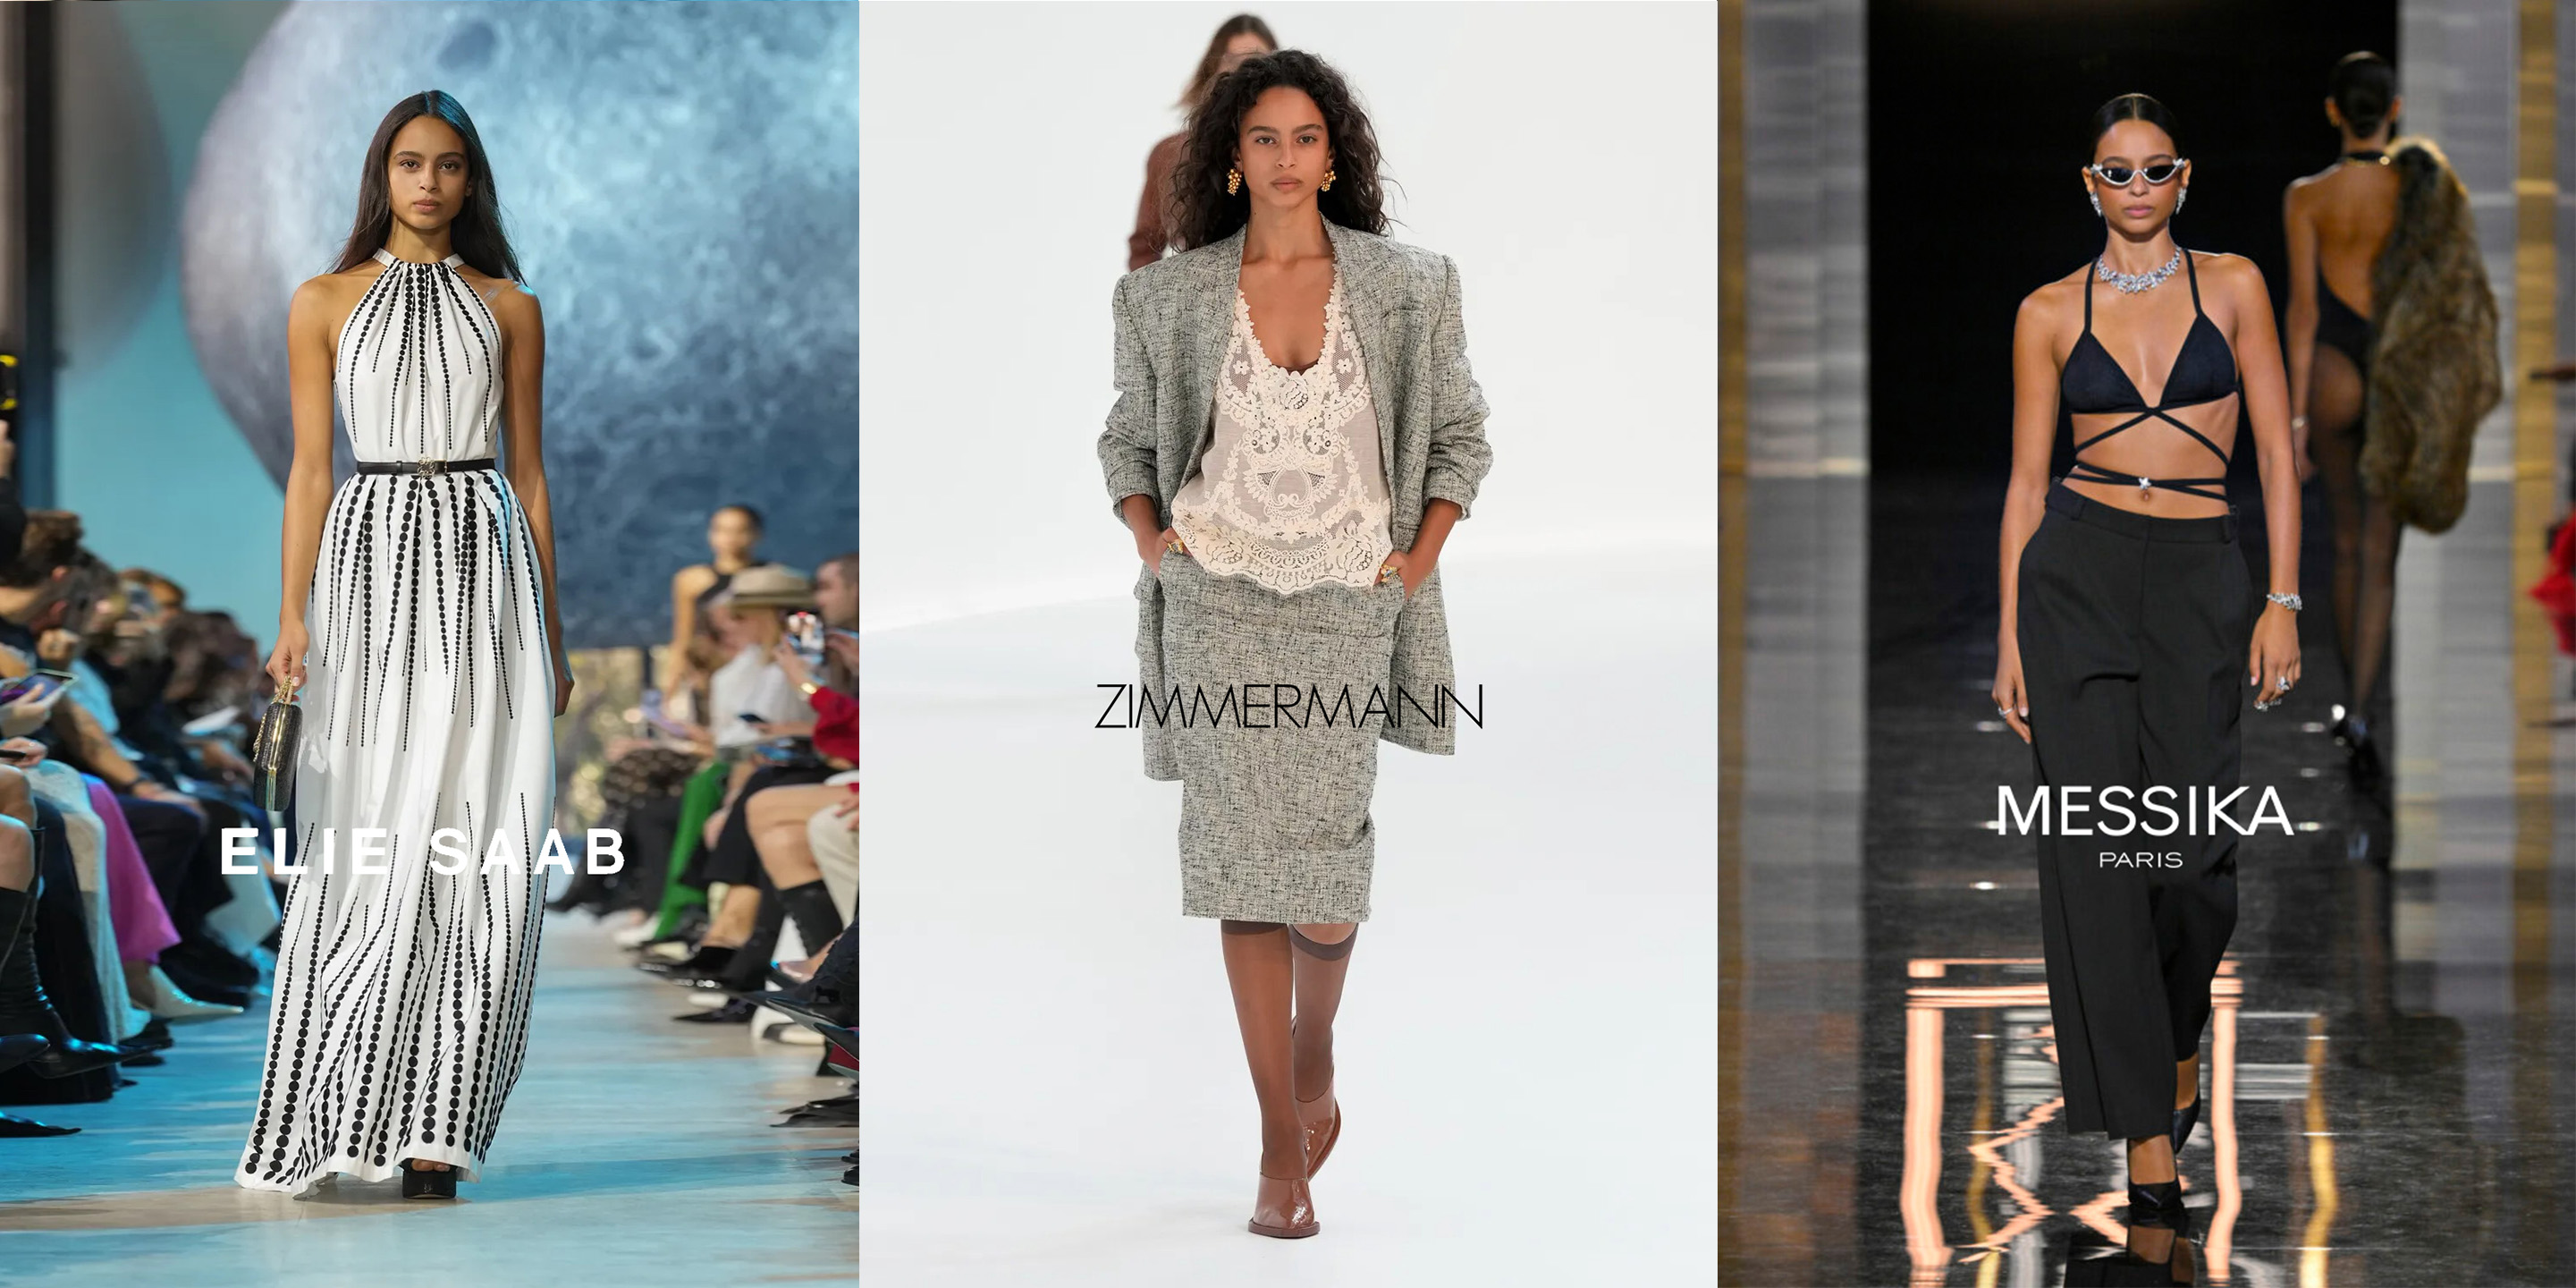 Louis Vuitton Herbst/Winter 2020-2021 Ready-to-Wear - Kollektion, Vogue  Germany